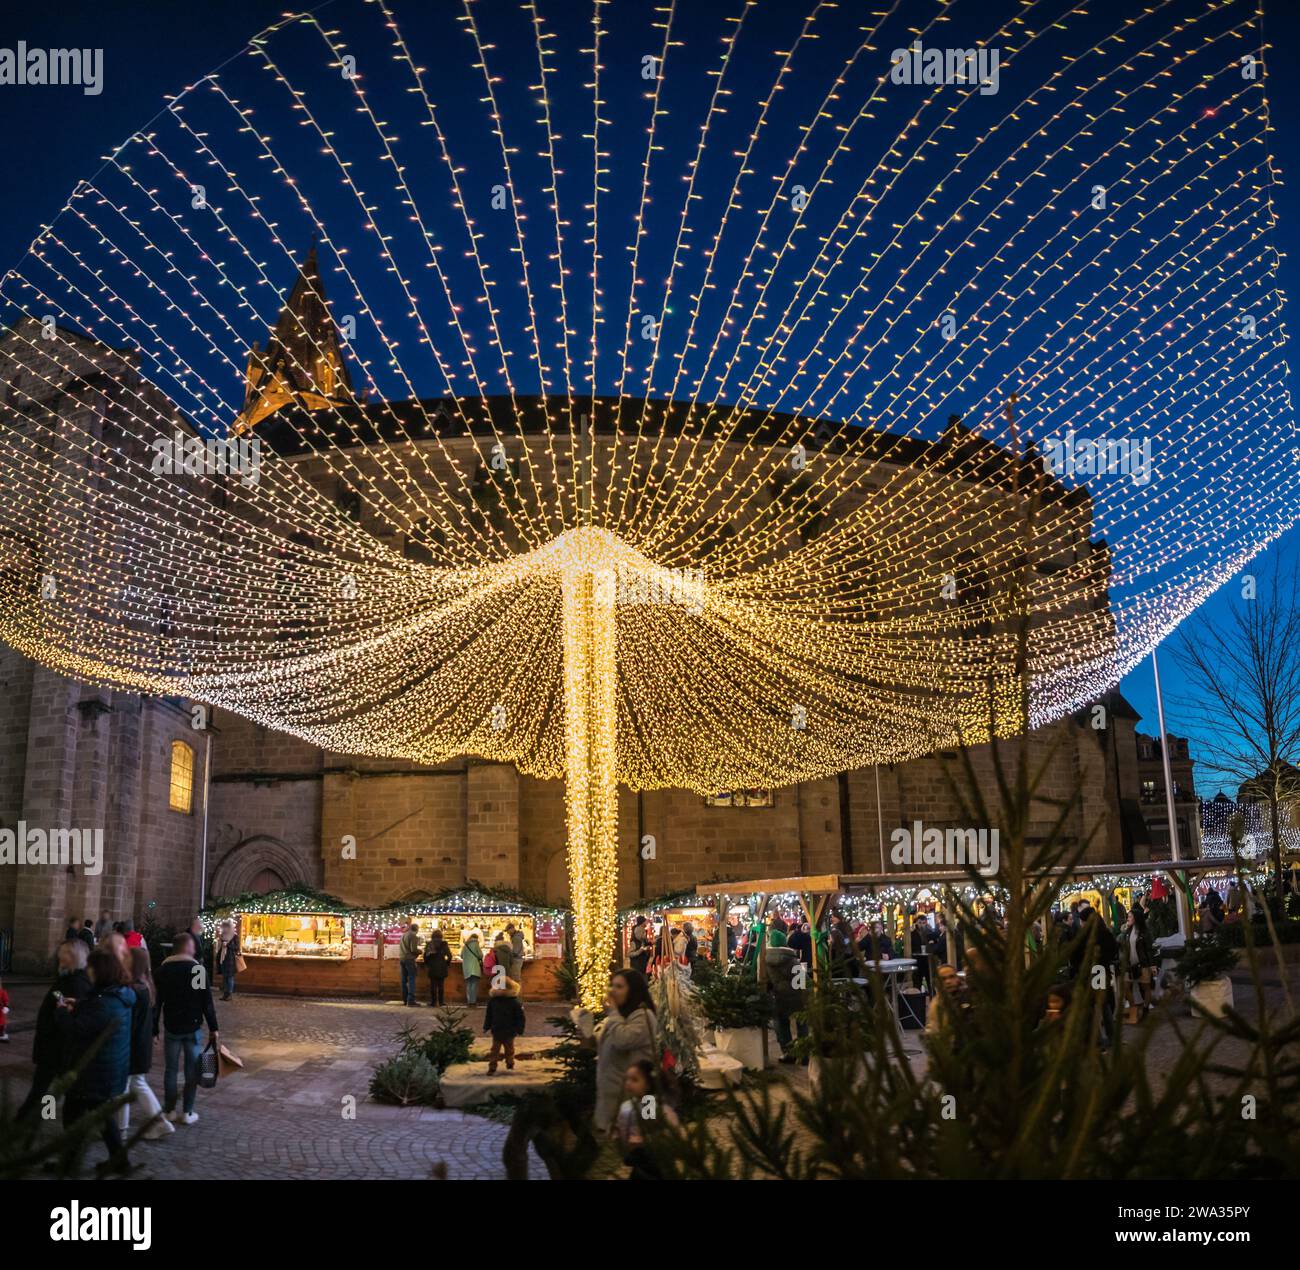 Vue panoramique des Illuminations de Noël devant la médiathèque Foto Stock